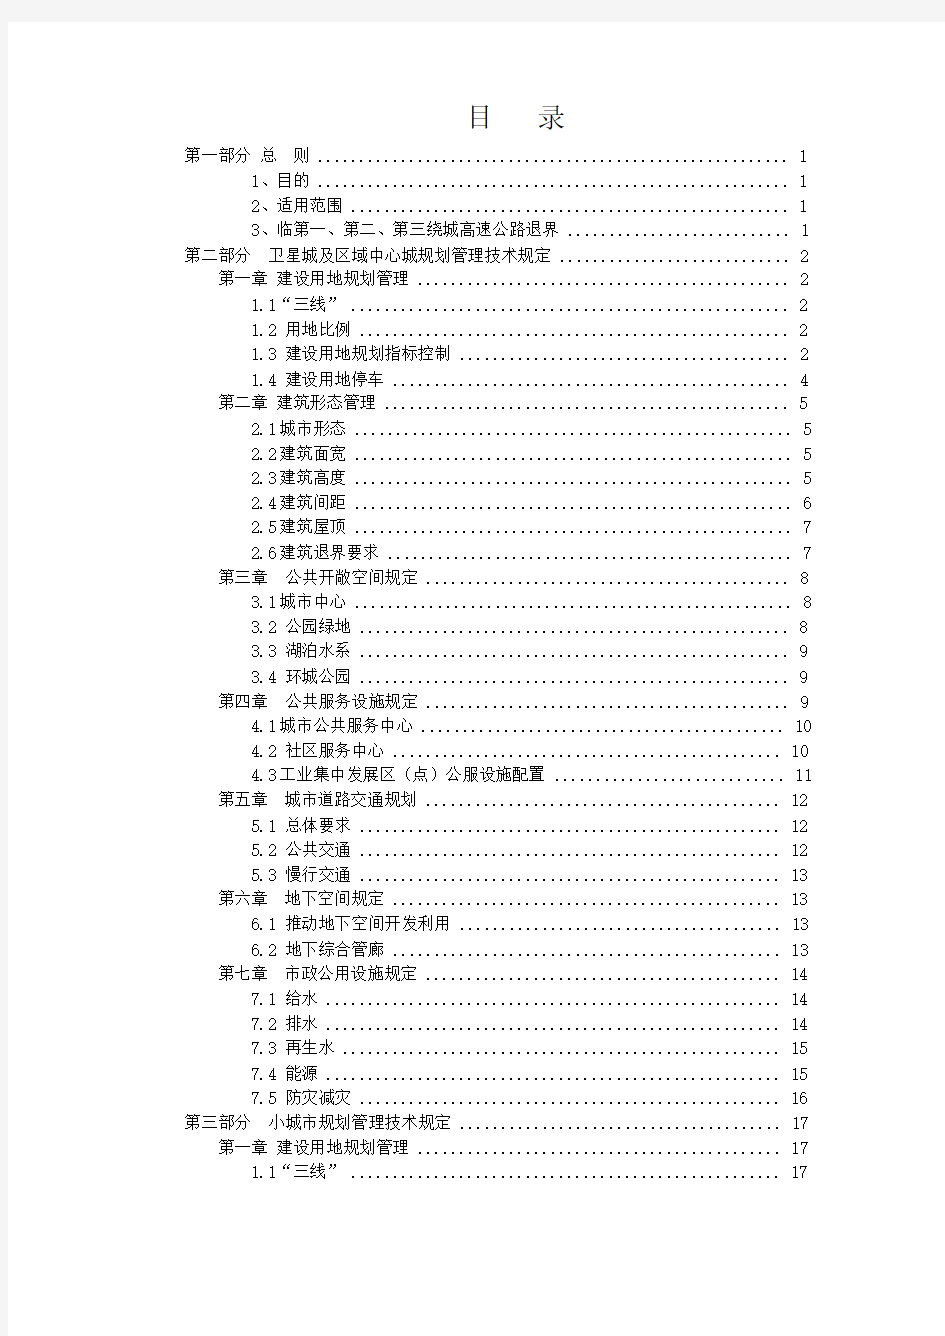 (完整版)成都市城镇及村庄规划管理技术规定(2015)